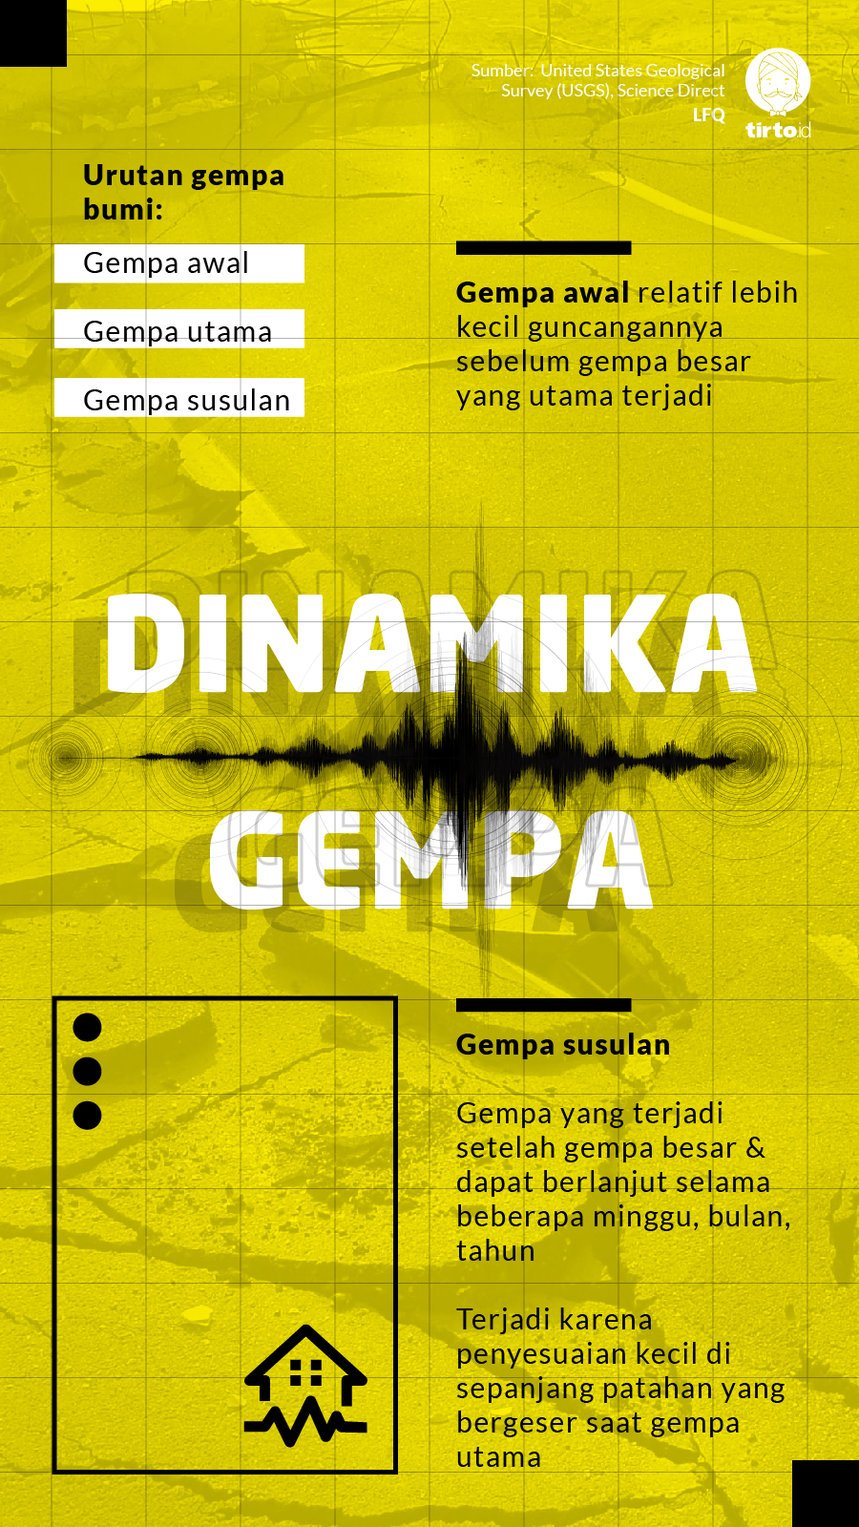 Infografik Dinamika Gempa